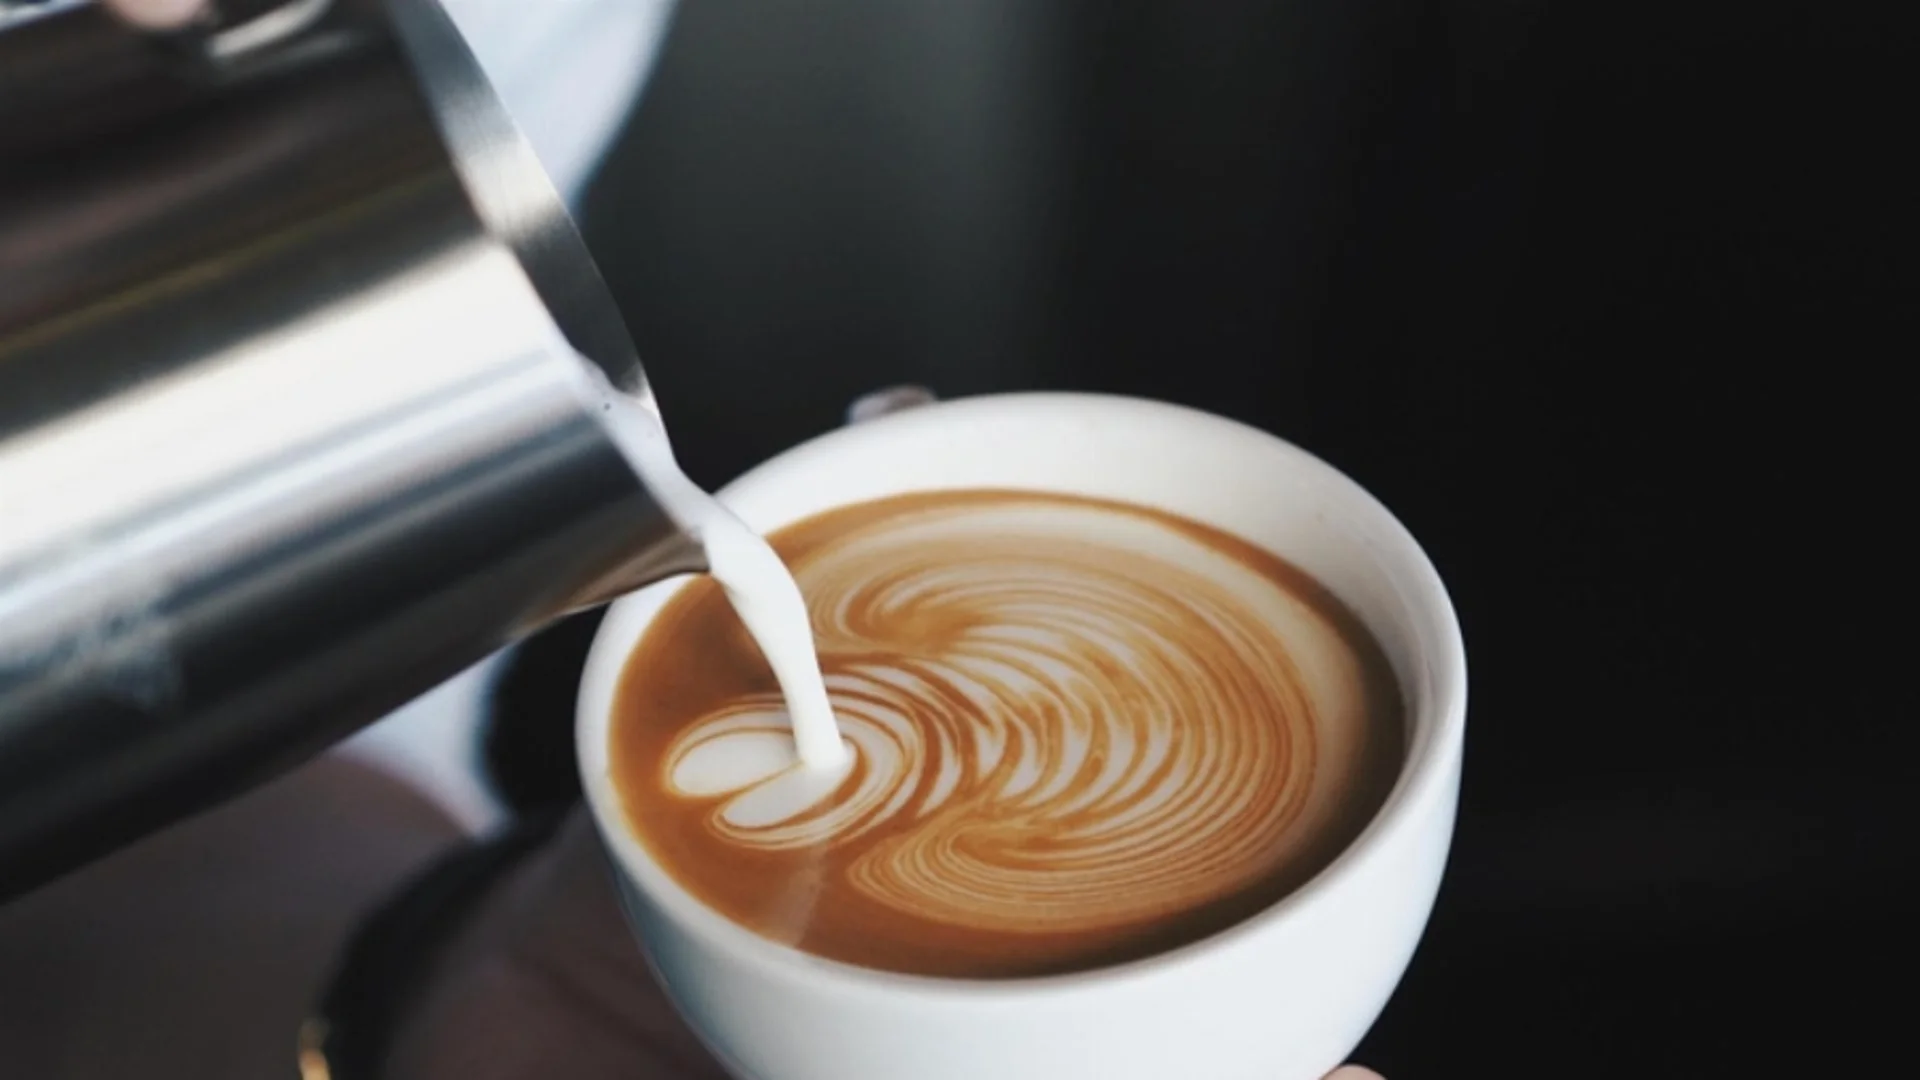 Кафе с мляко - как е правилно да се пие